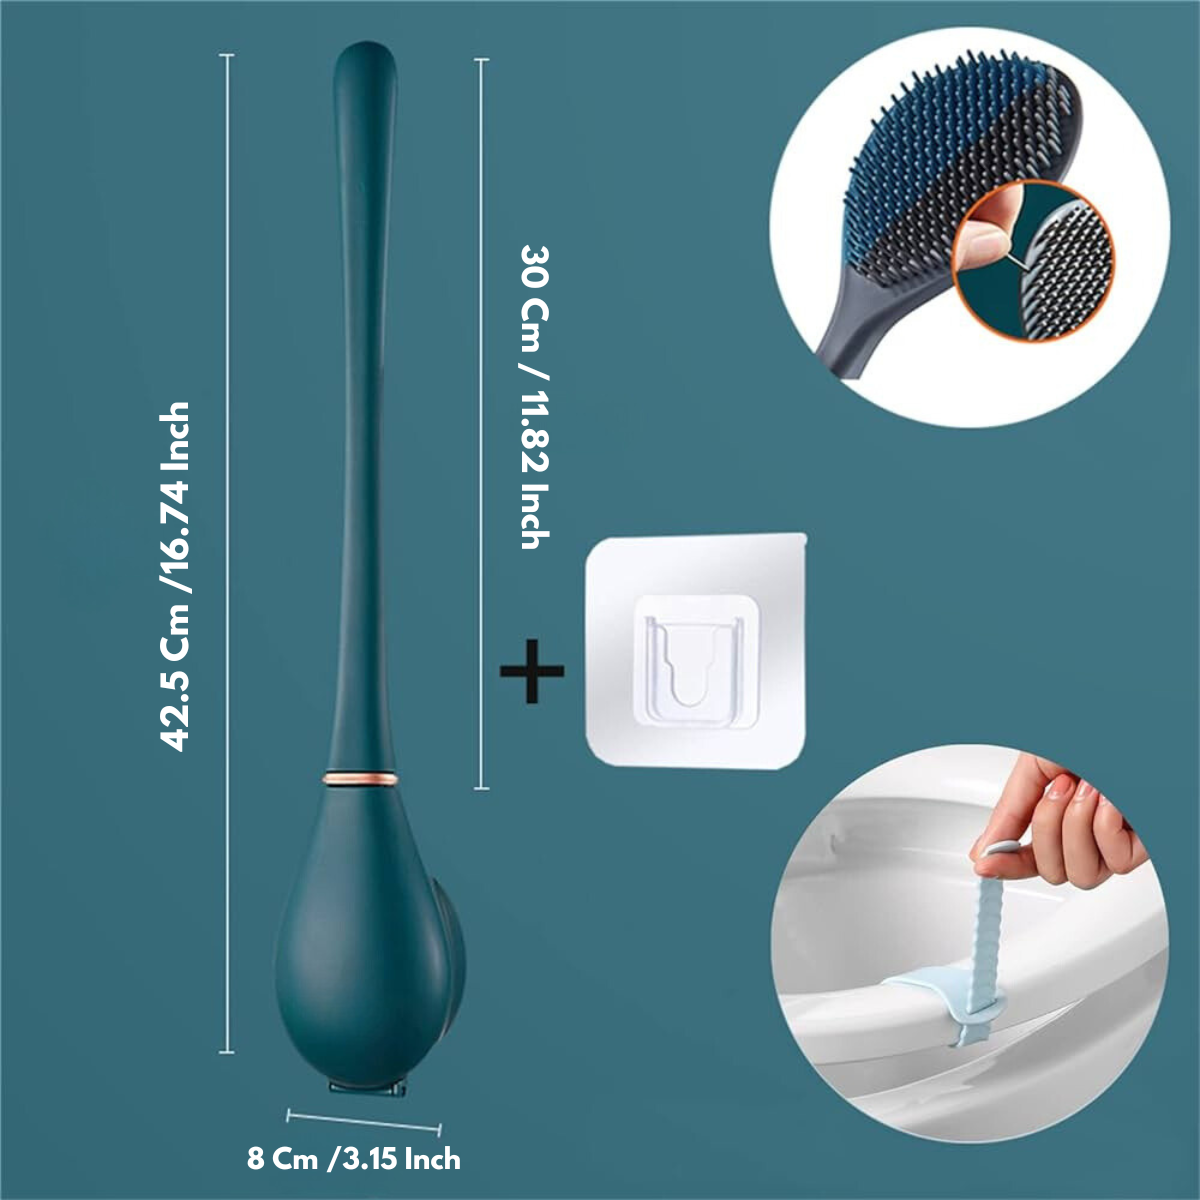 SmartBrush - Escova de silicone elegante e higiénica para sanitas